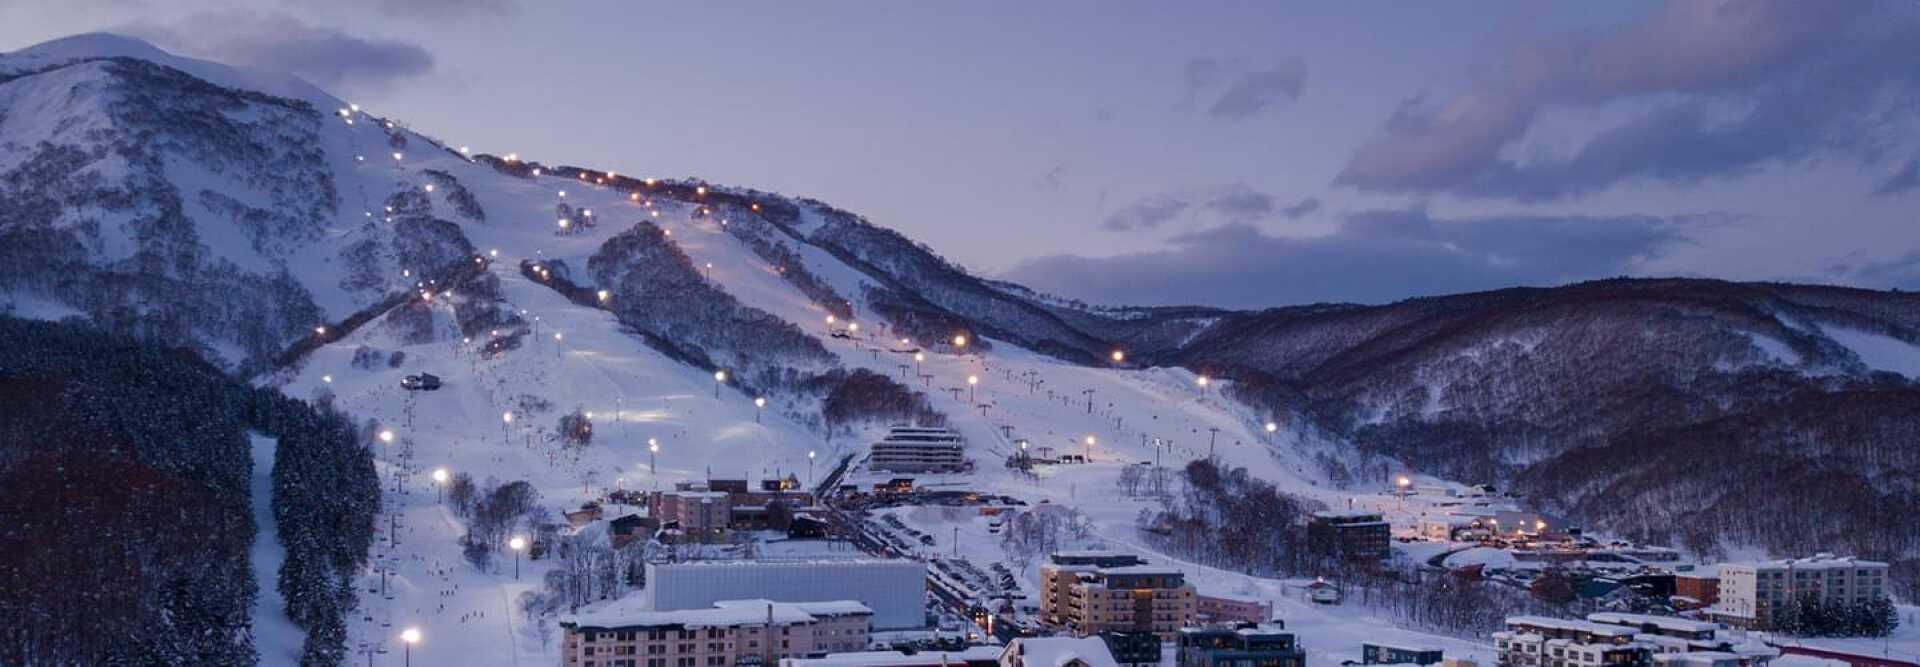 Vue aérienne des pistes de ski de Sapporo au Japon dans la pénombre du soir